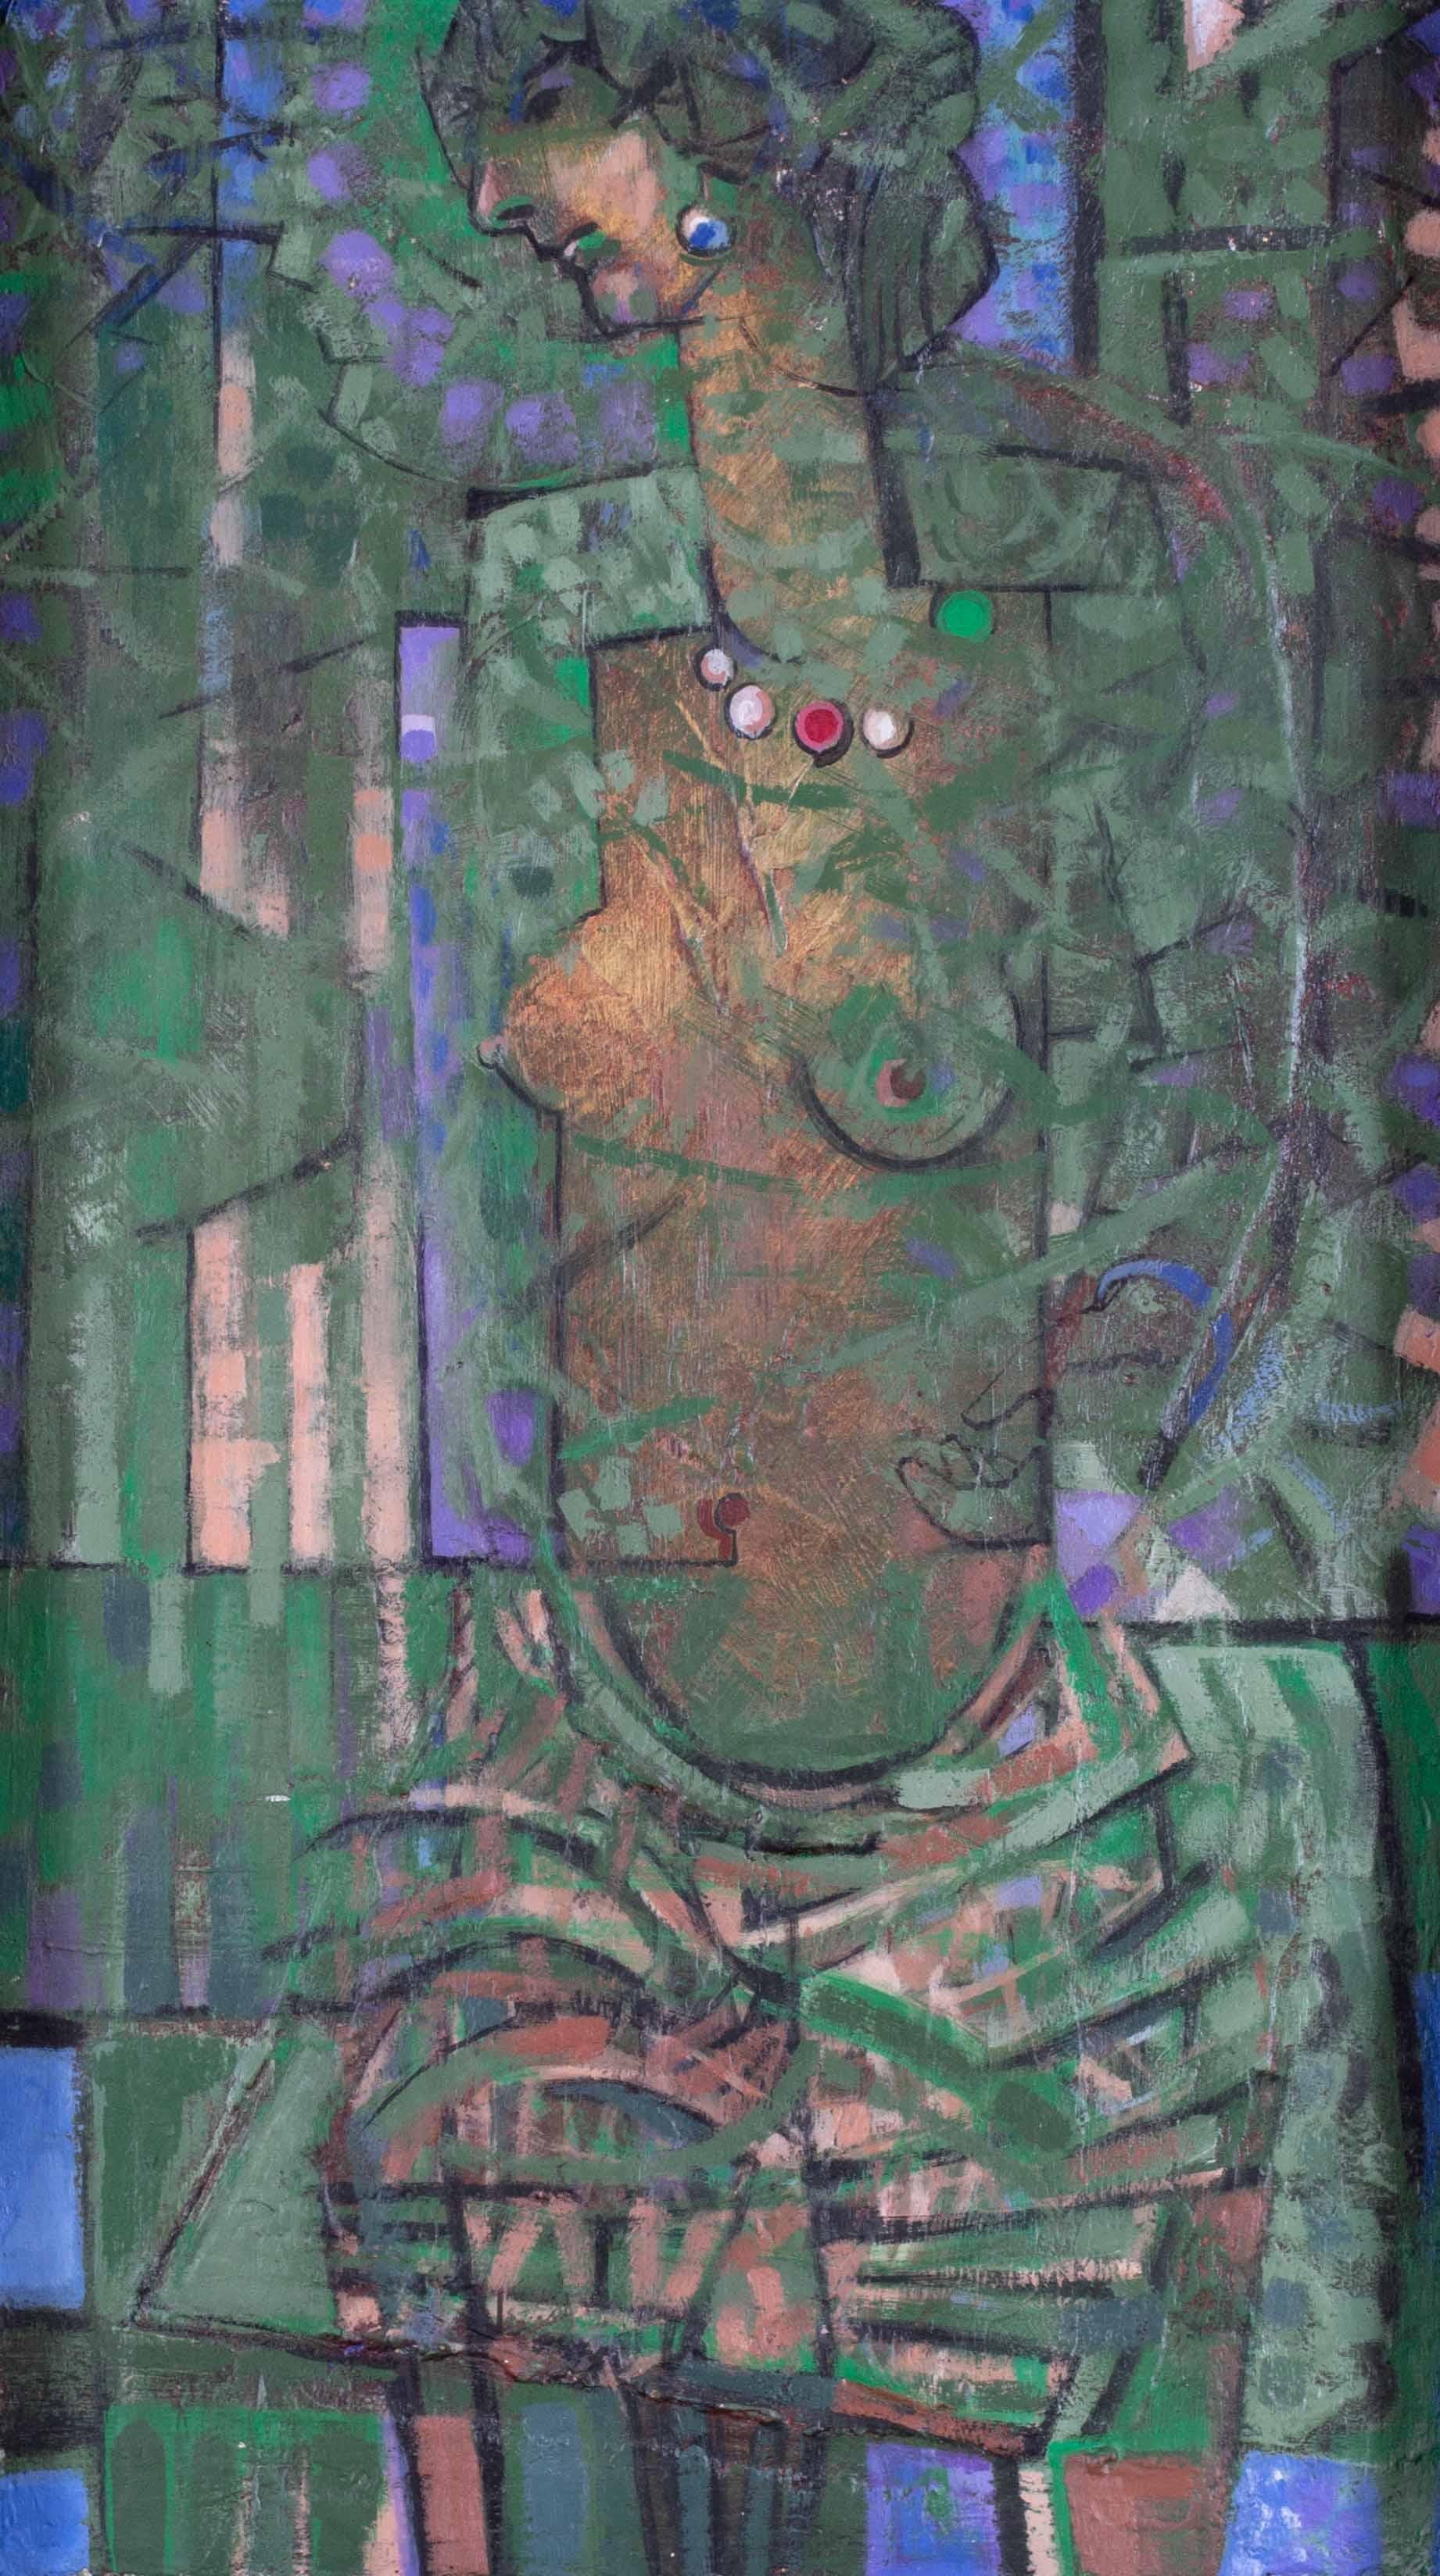 Britischer abstrahierter weiblicher Akt des 20. Jahrhunderts in Grün – Painting von Roger Smith